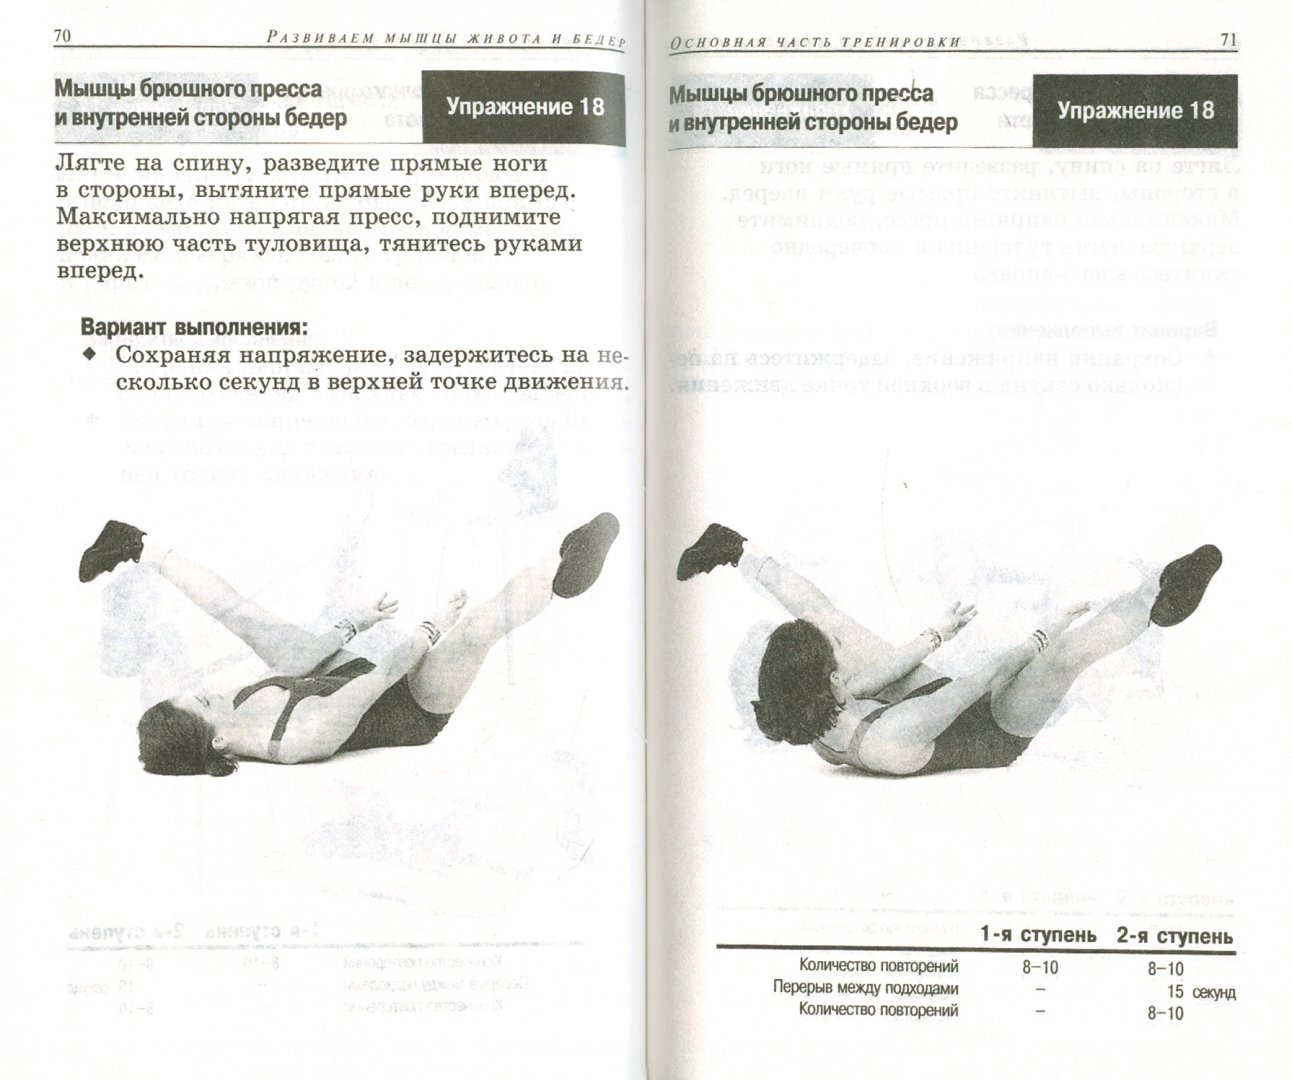 Иллюстрация 1 из 11 для Тренировки для женщин. Живот и бёдра - Сабина Летувник | Лабиринт - книги. Источник: Лабиринт